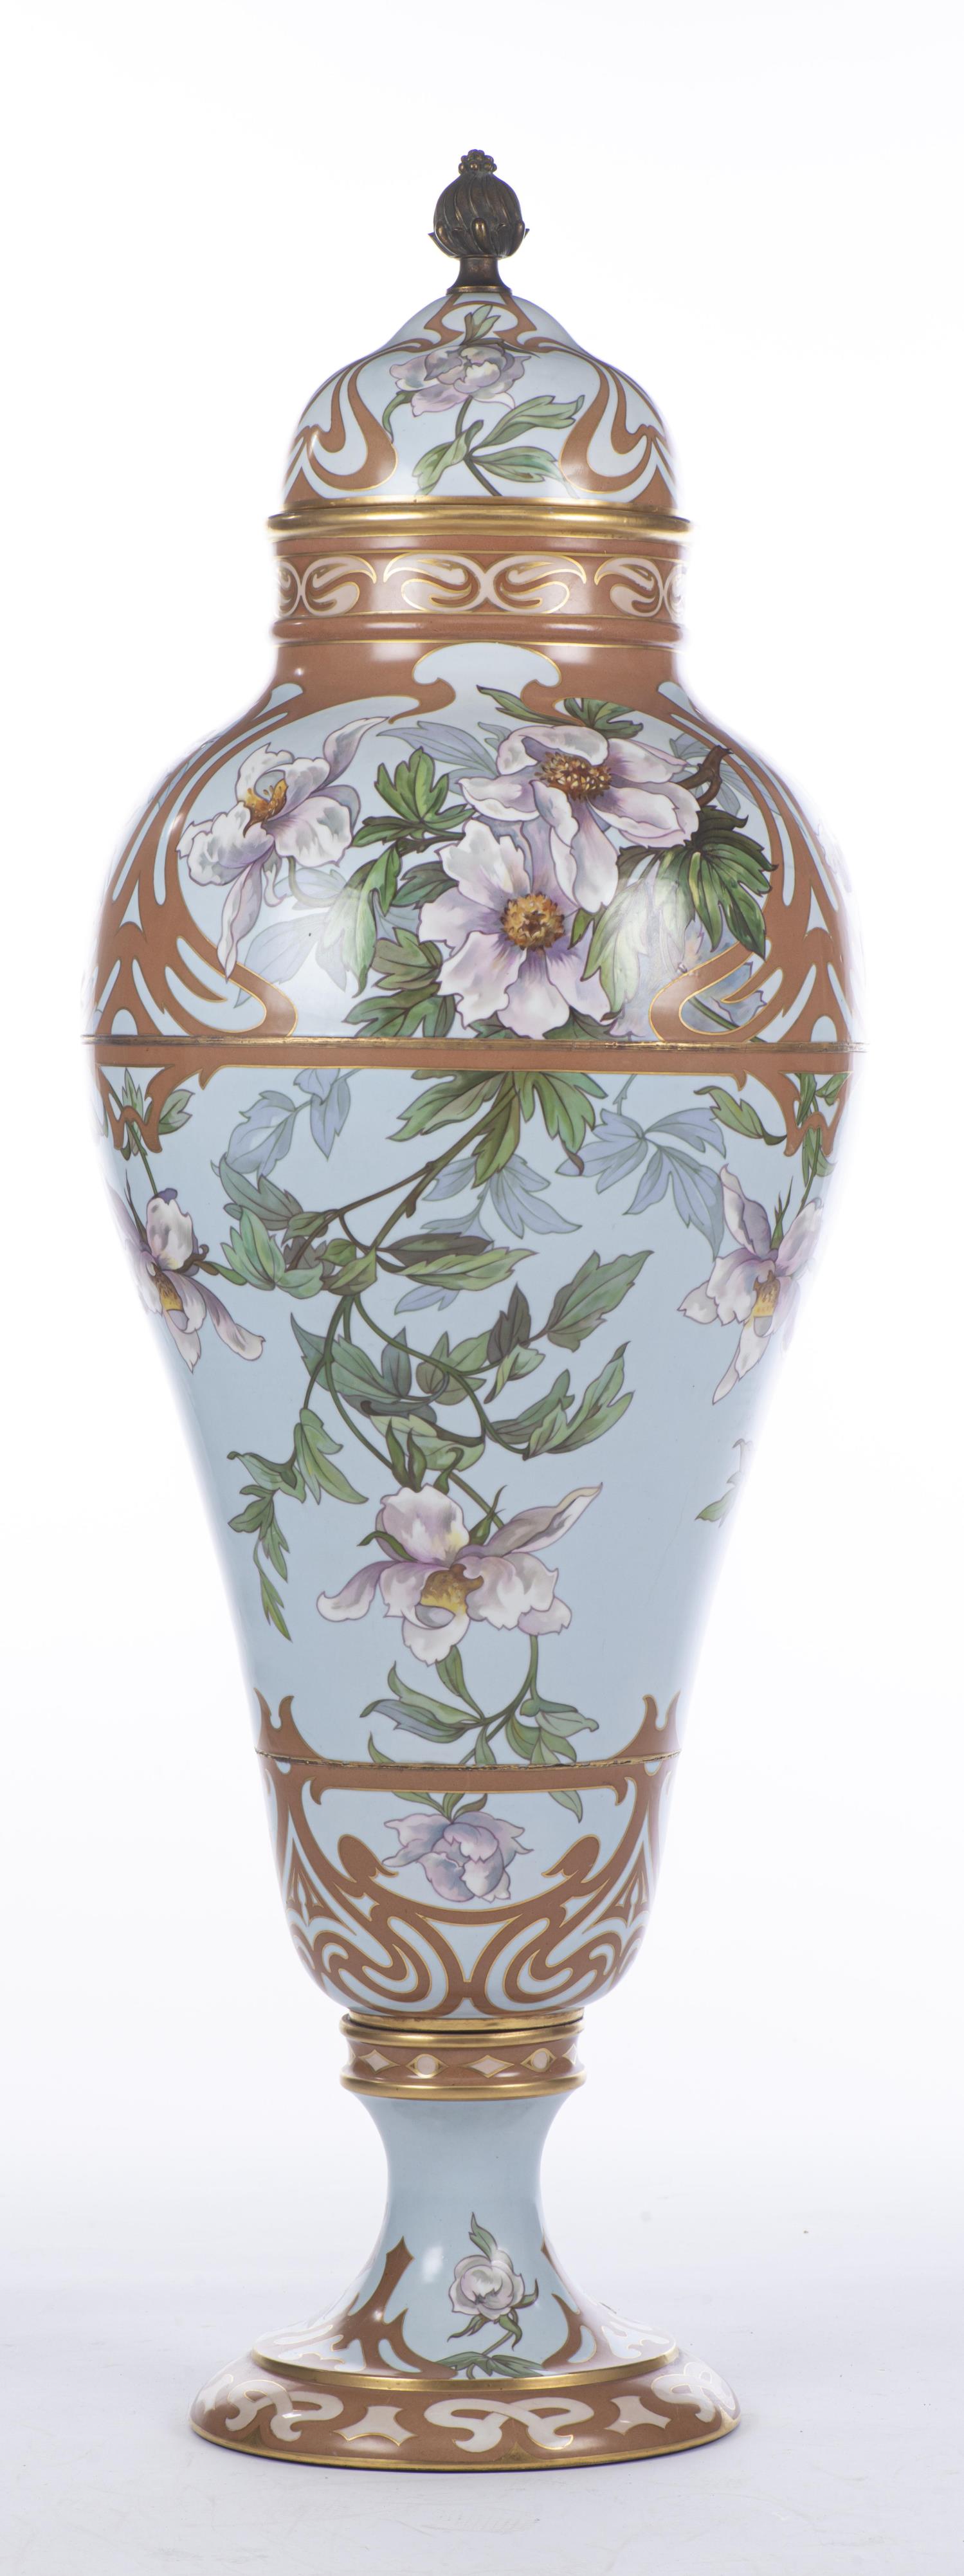 Grand vase en porcelaine de Limoges France par W.G. & Co par W. Guerin & Cie - Image 14 of 18